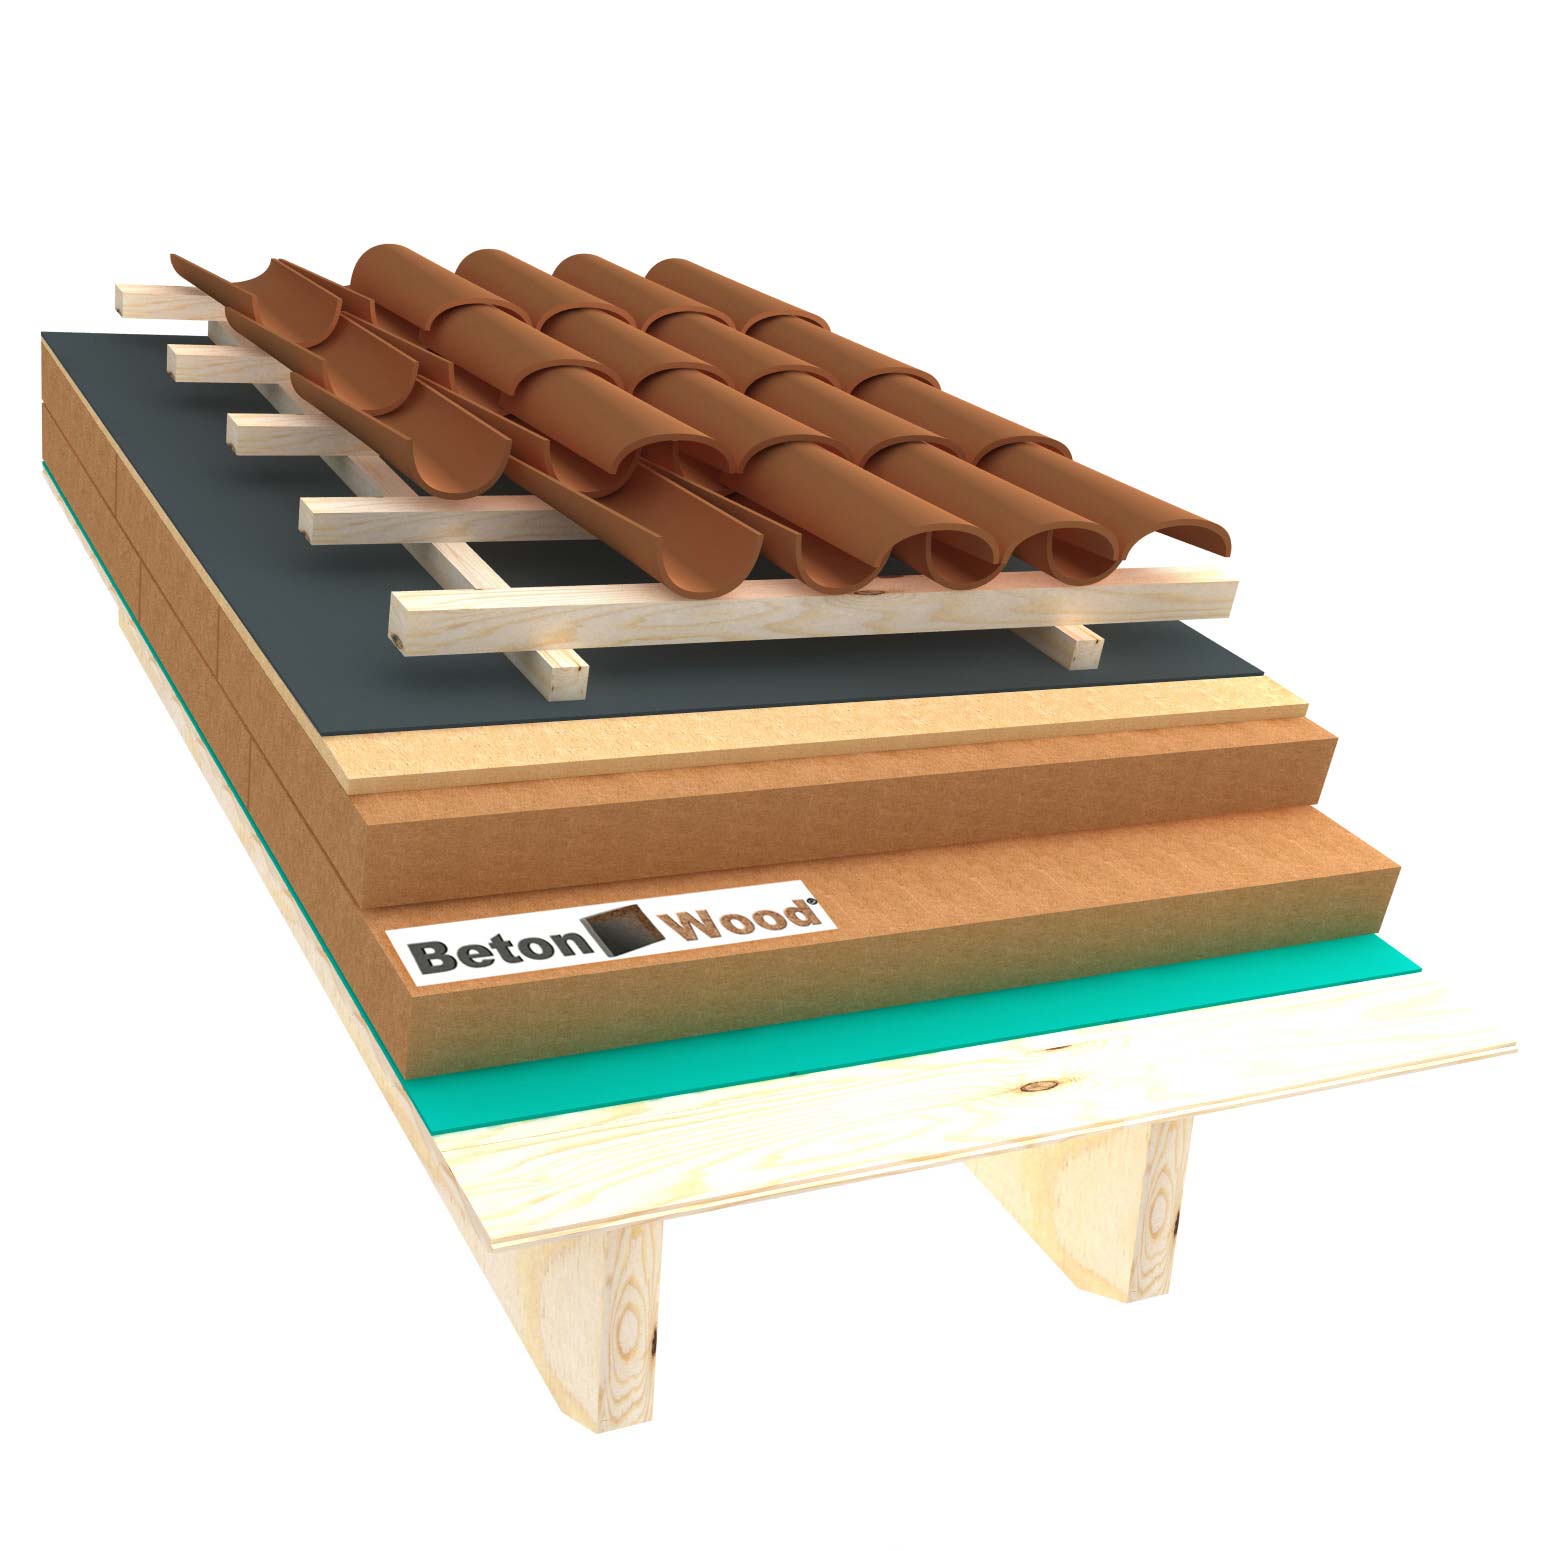 Sistema tetto B fibra di legno Therm ed Isorel